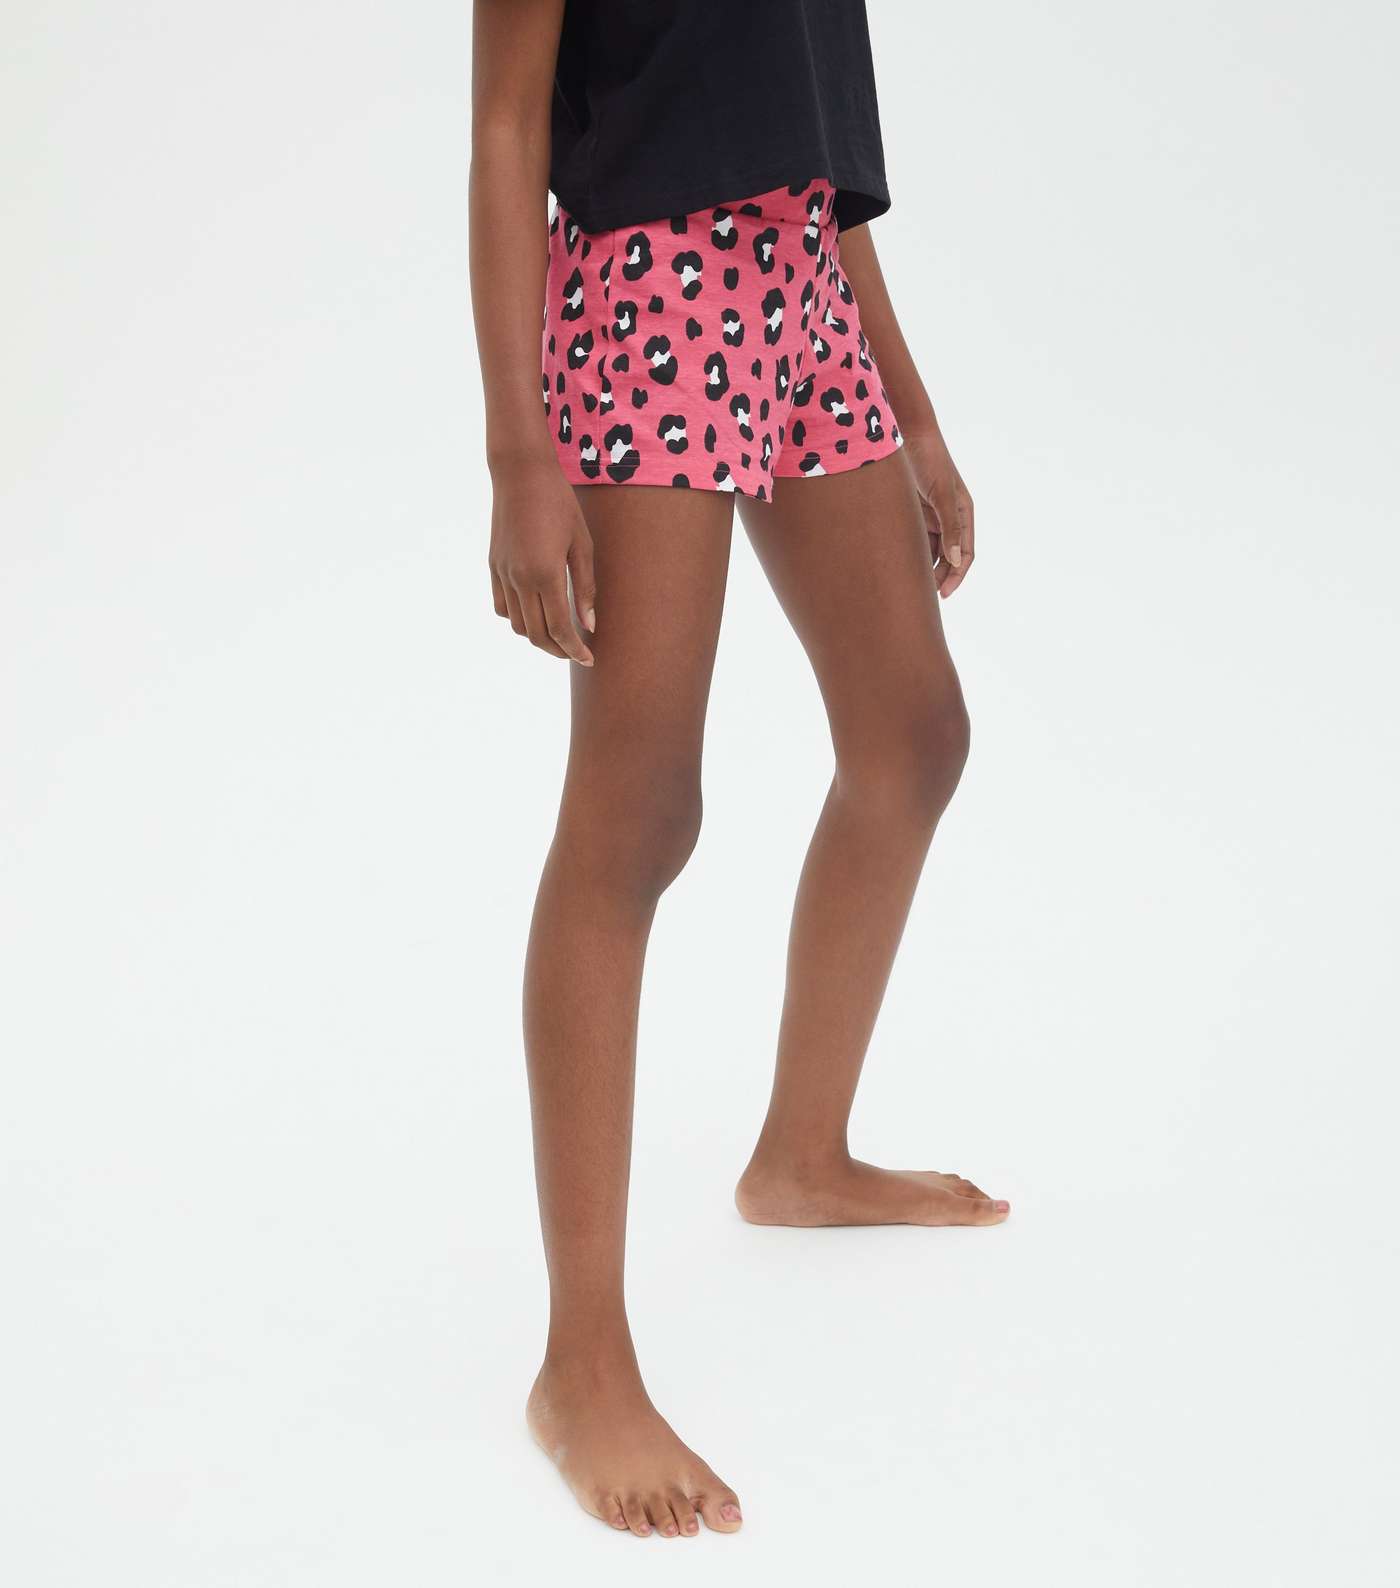 Girls 2 Pack Black Short Pyjama Sets with Leopard Print Image 3